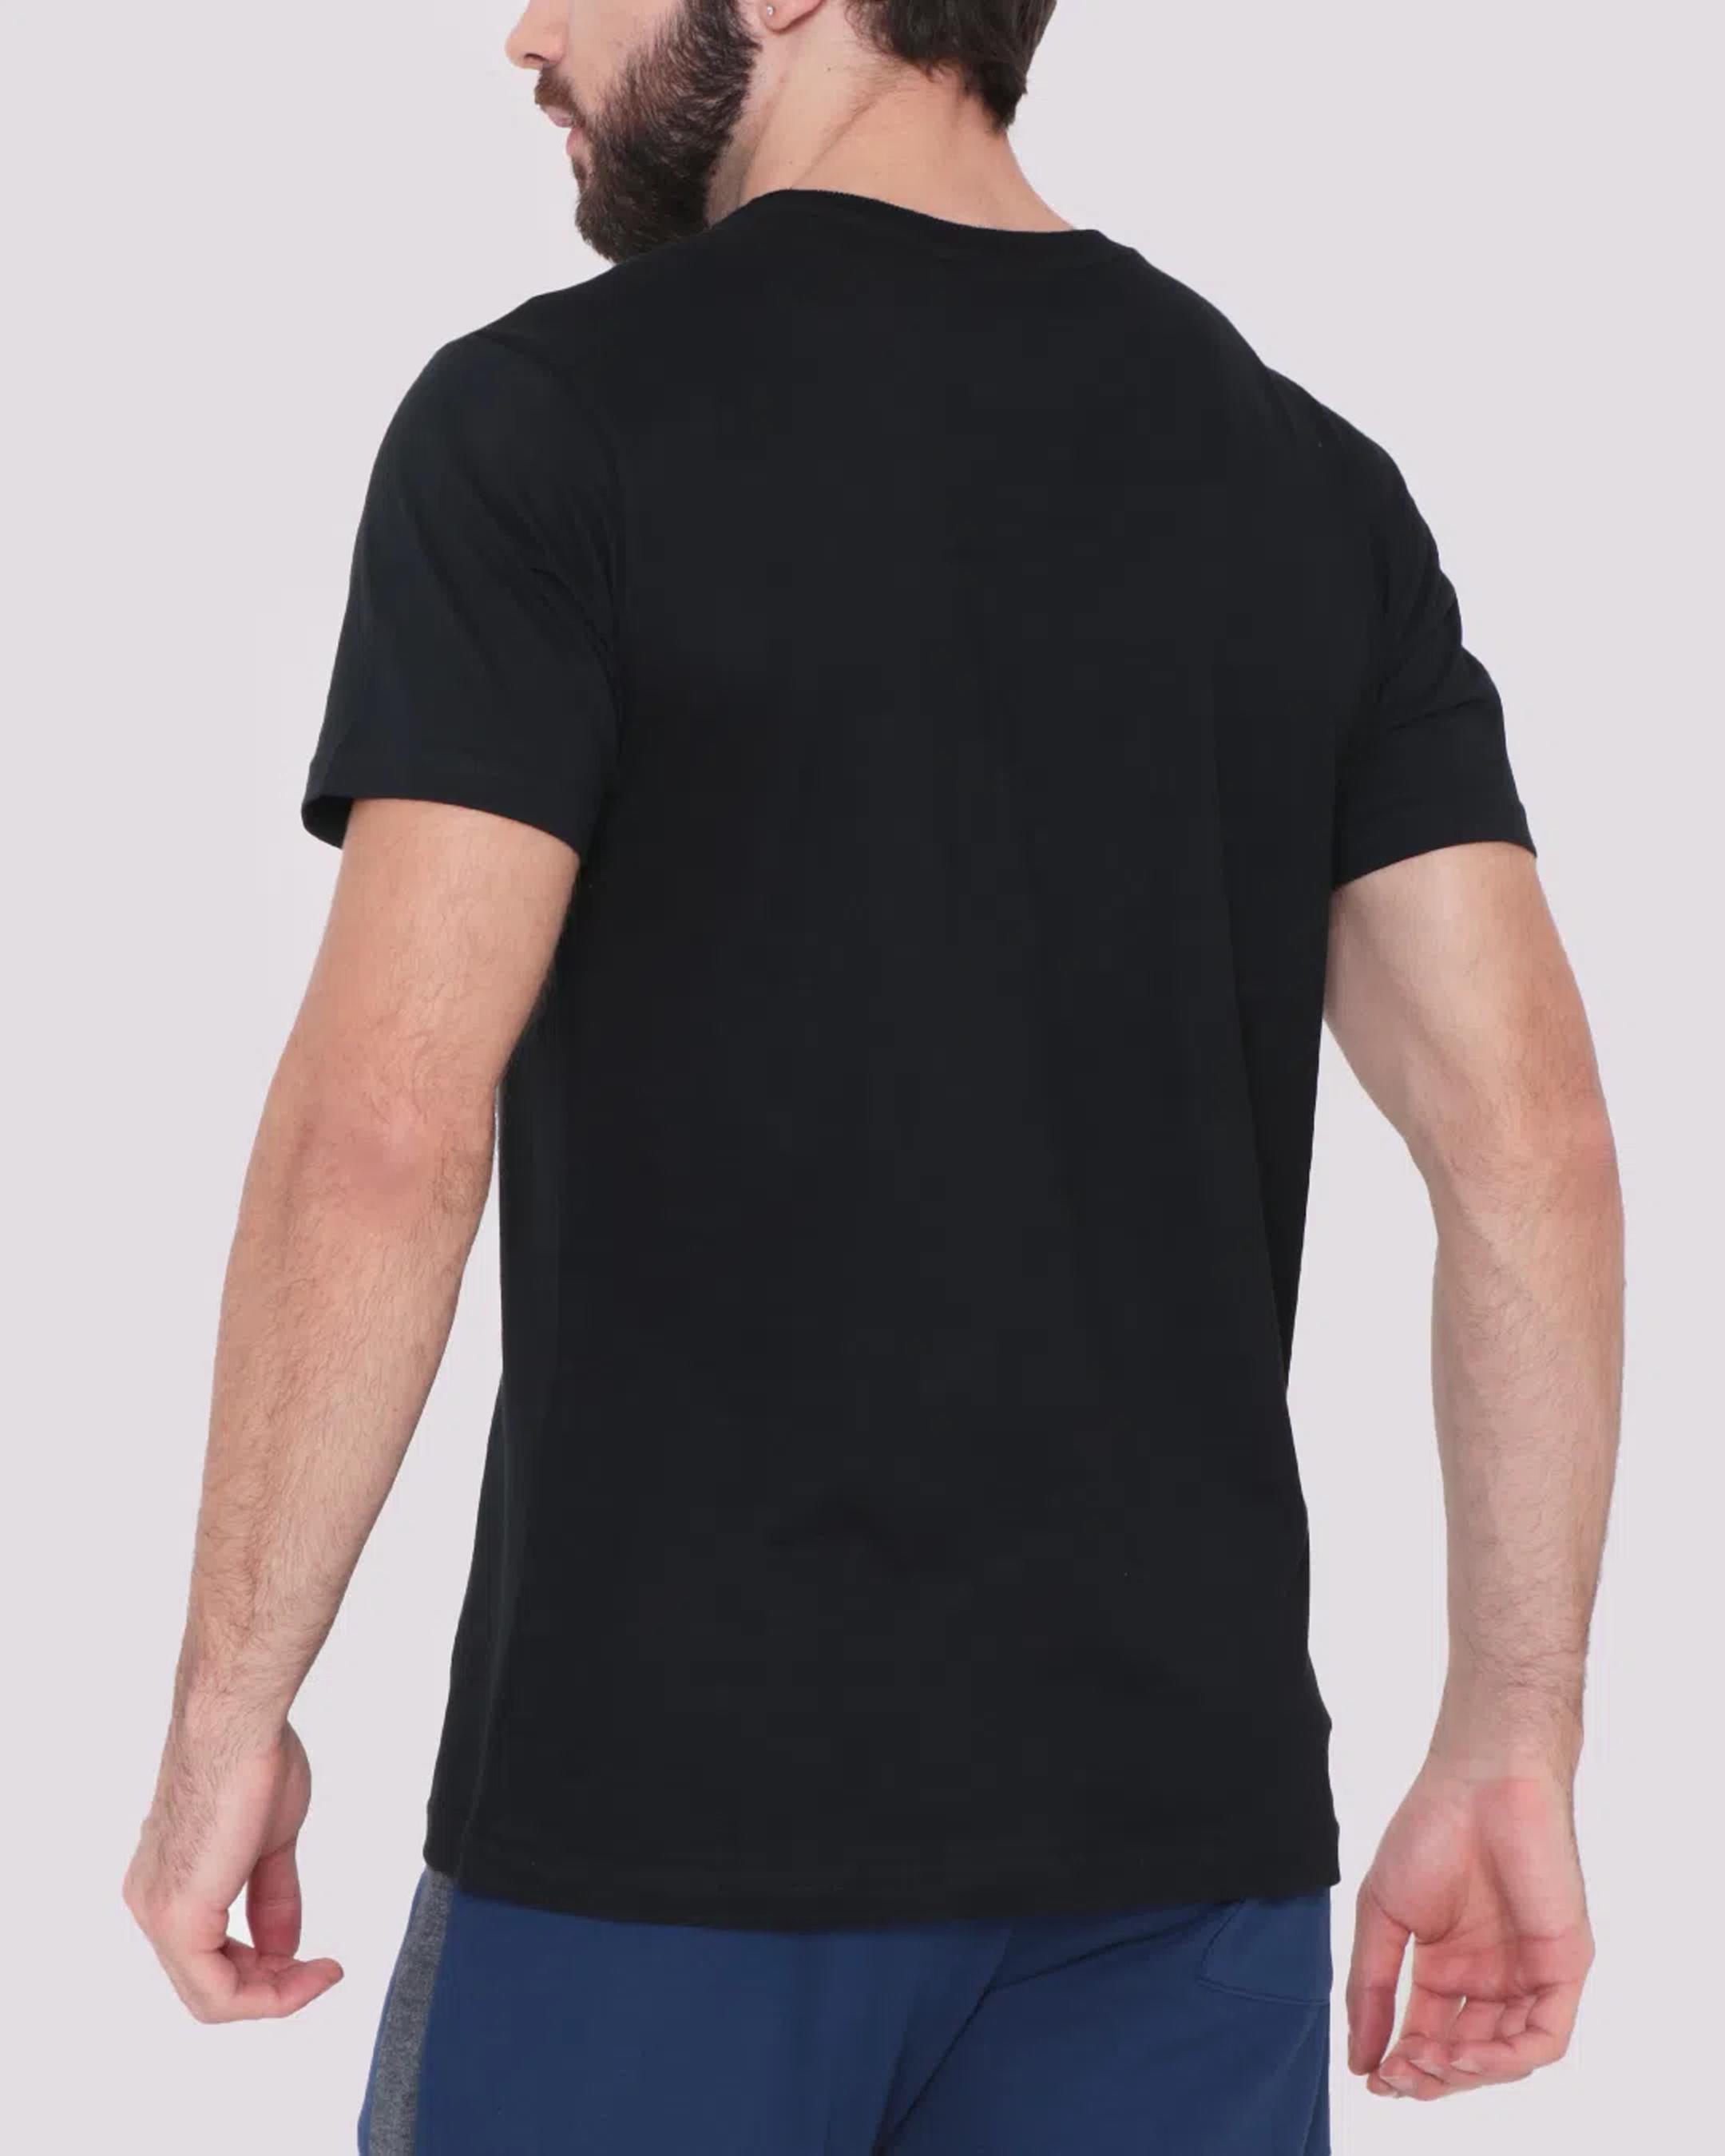 Camiseta-Ecko-U955a-Preto-Pgg---Preto